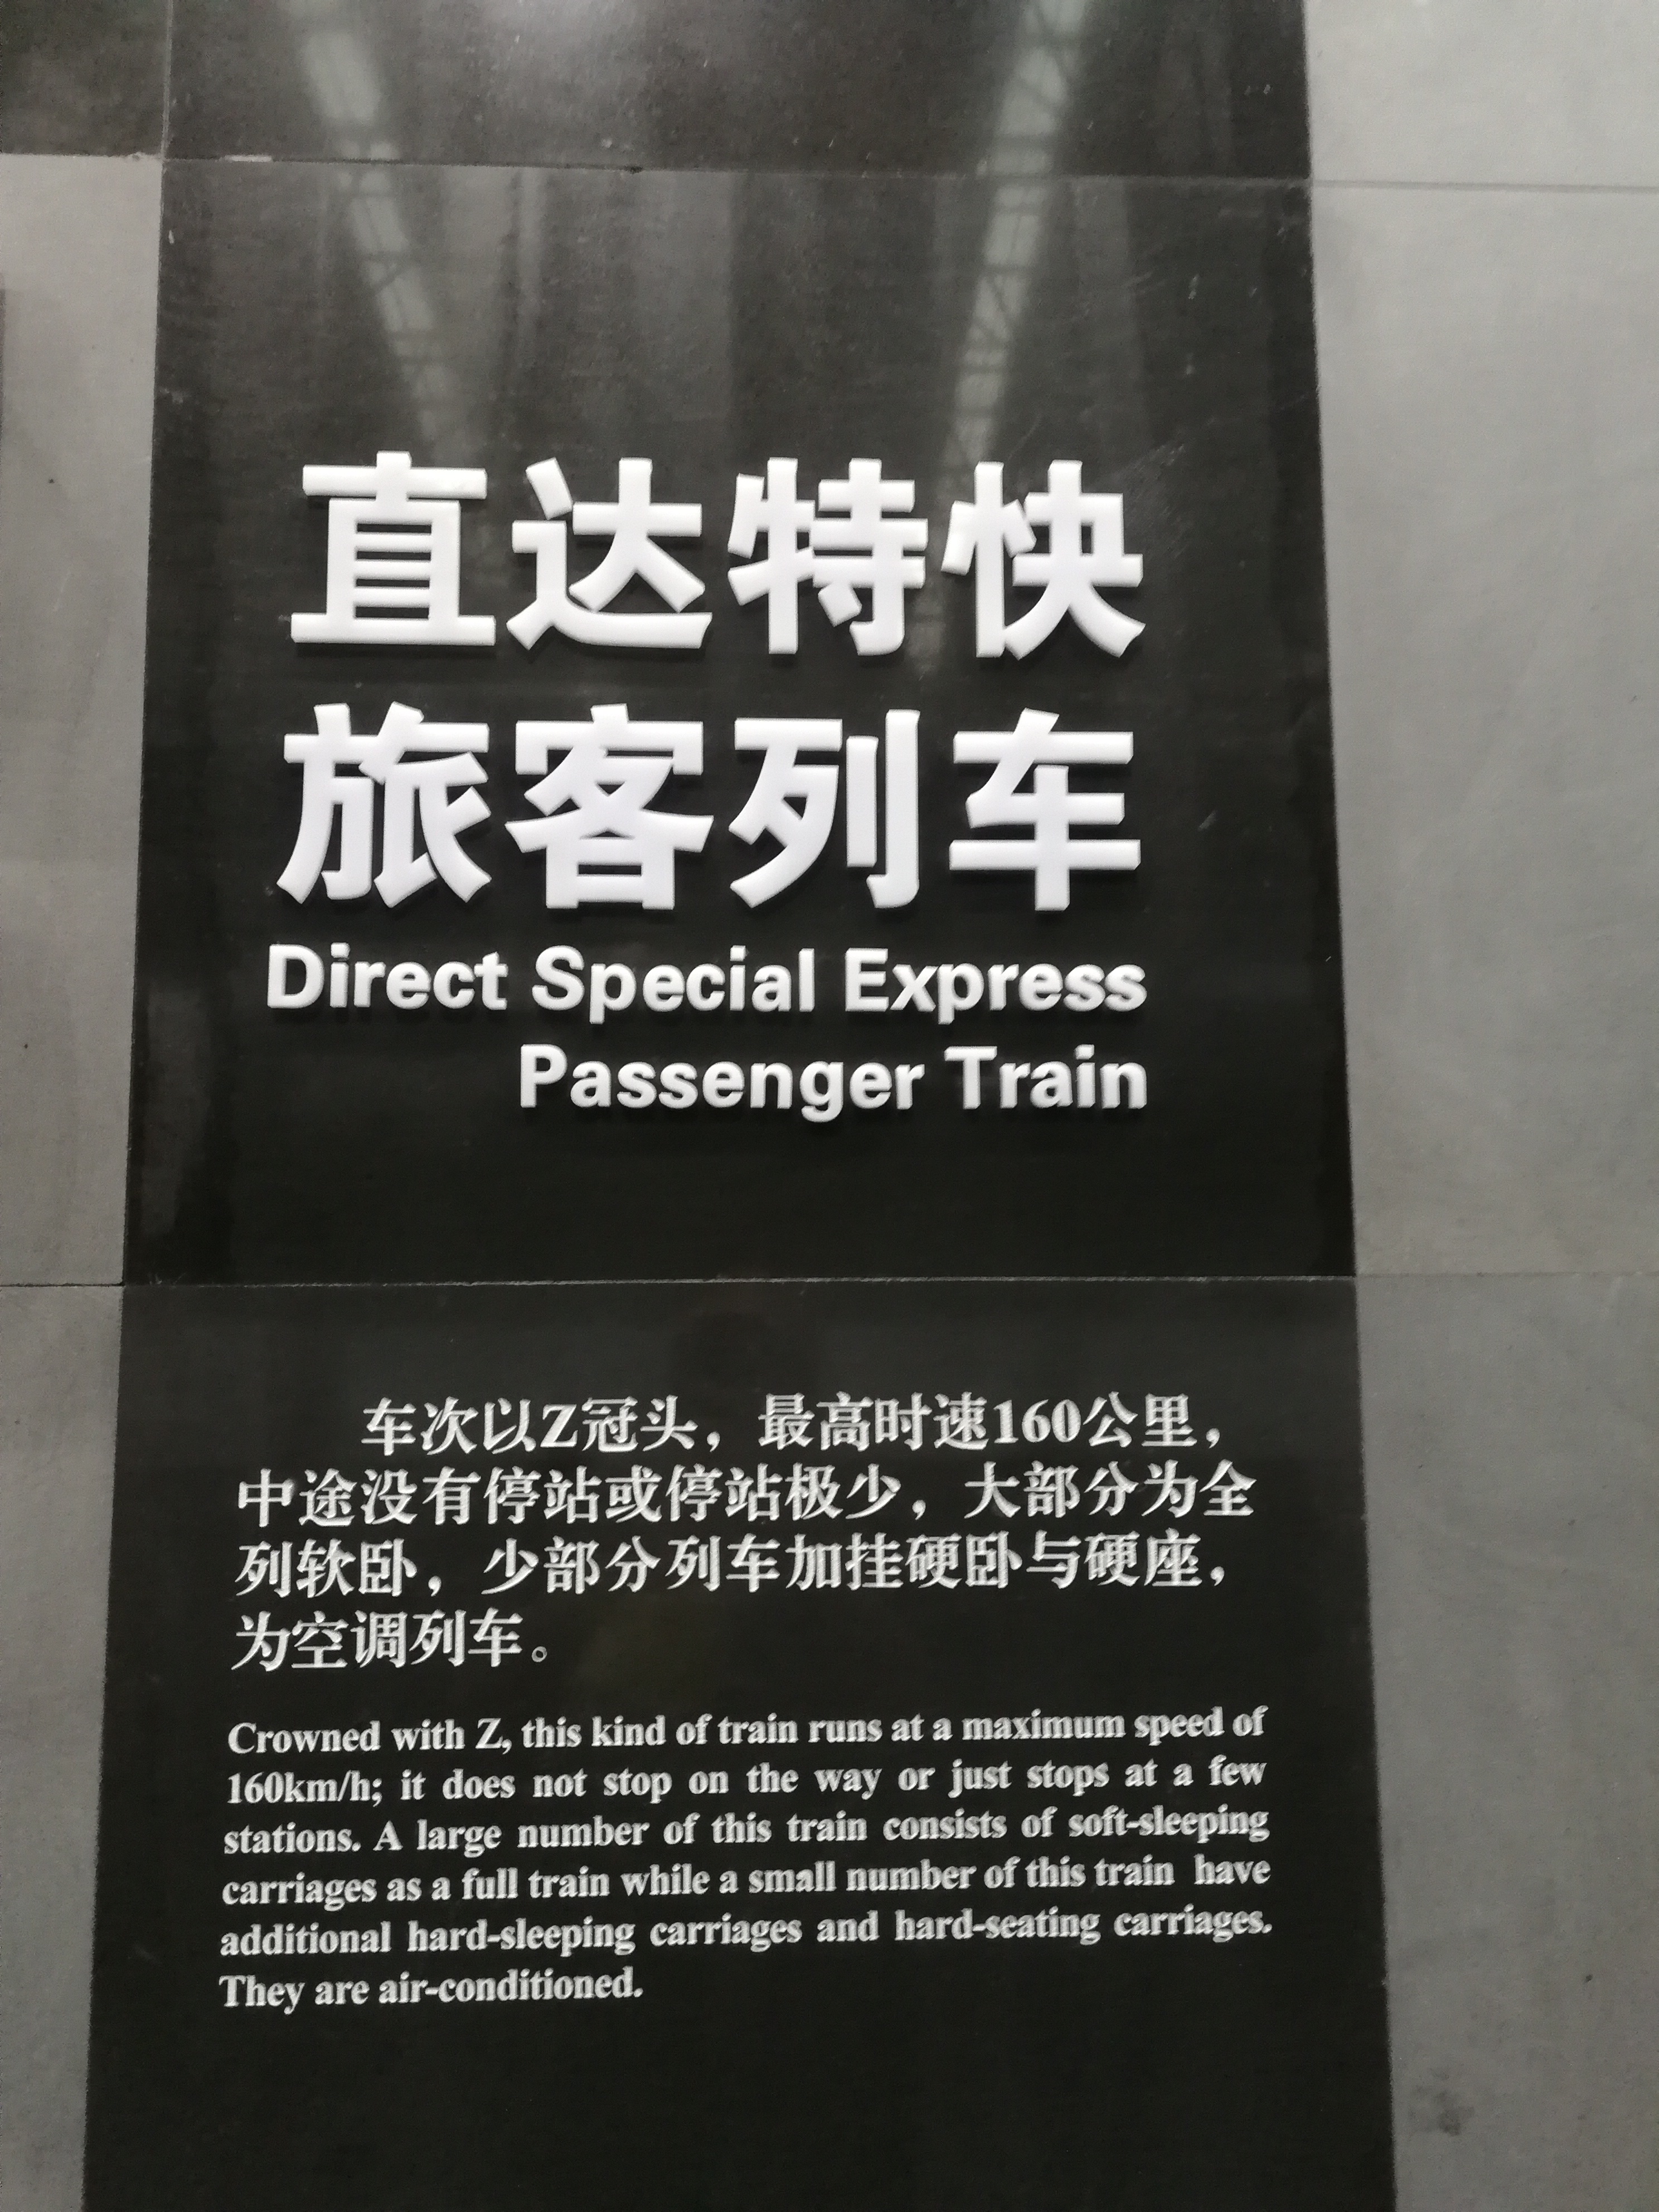 中華鐵道博物館關於直達列車定義的科普展示